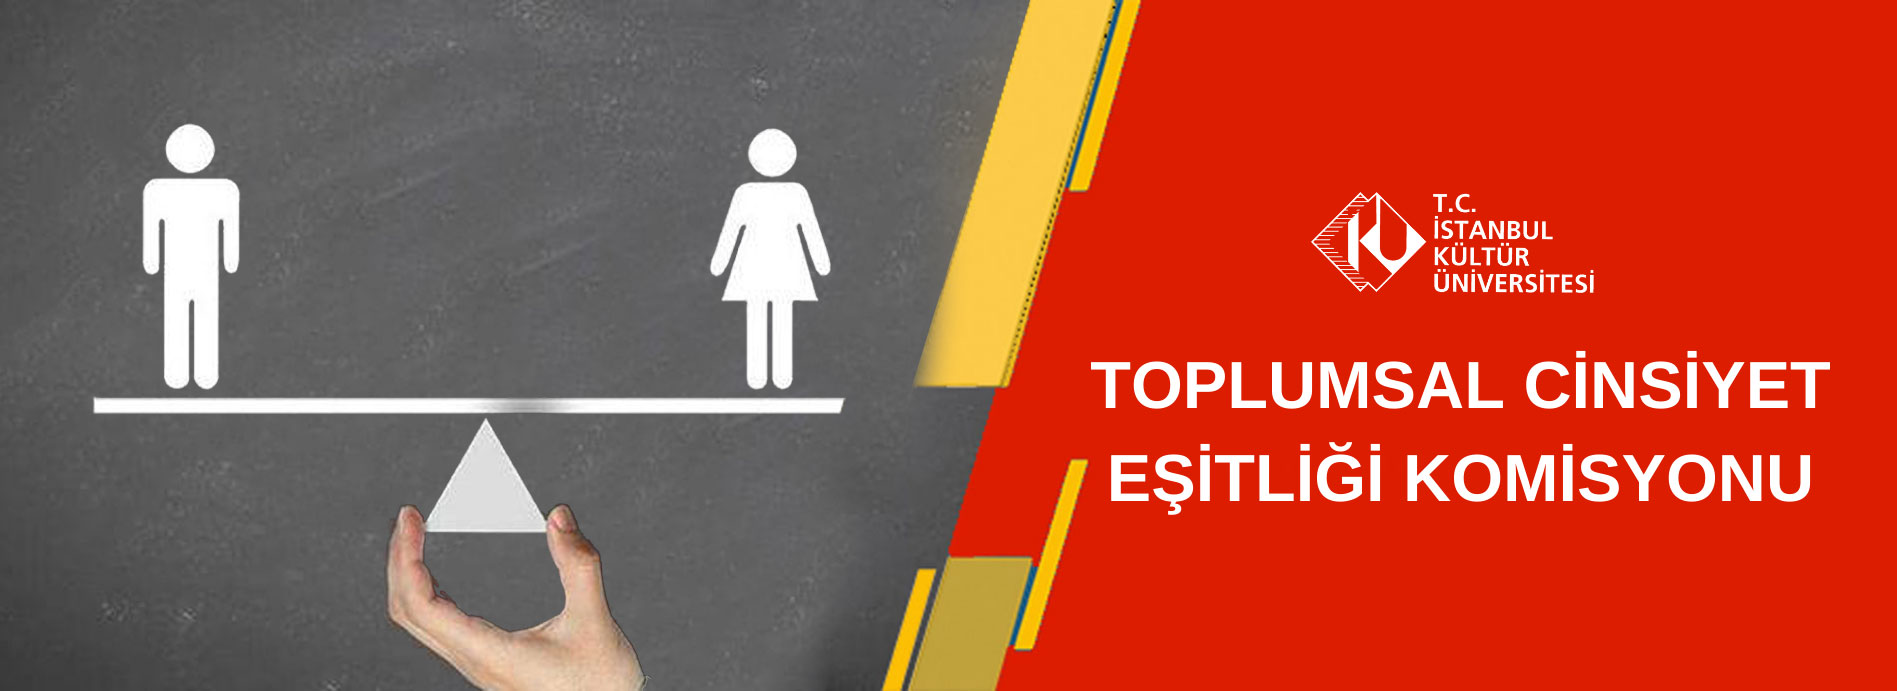 T.C. İstanbul Kültür Üniversitesi Toplumsal Cinsiyet Eşitliği Komisyonu